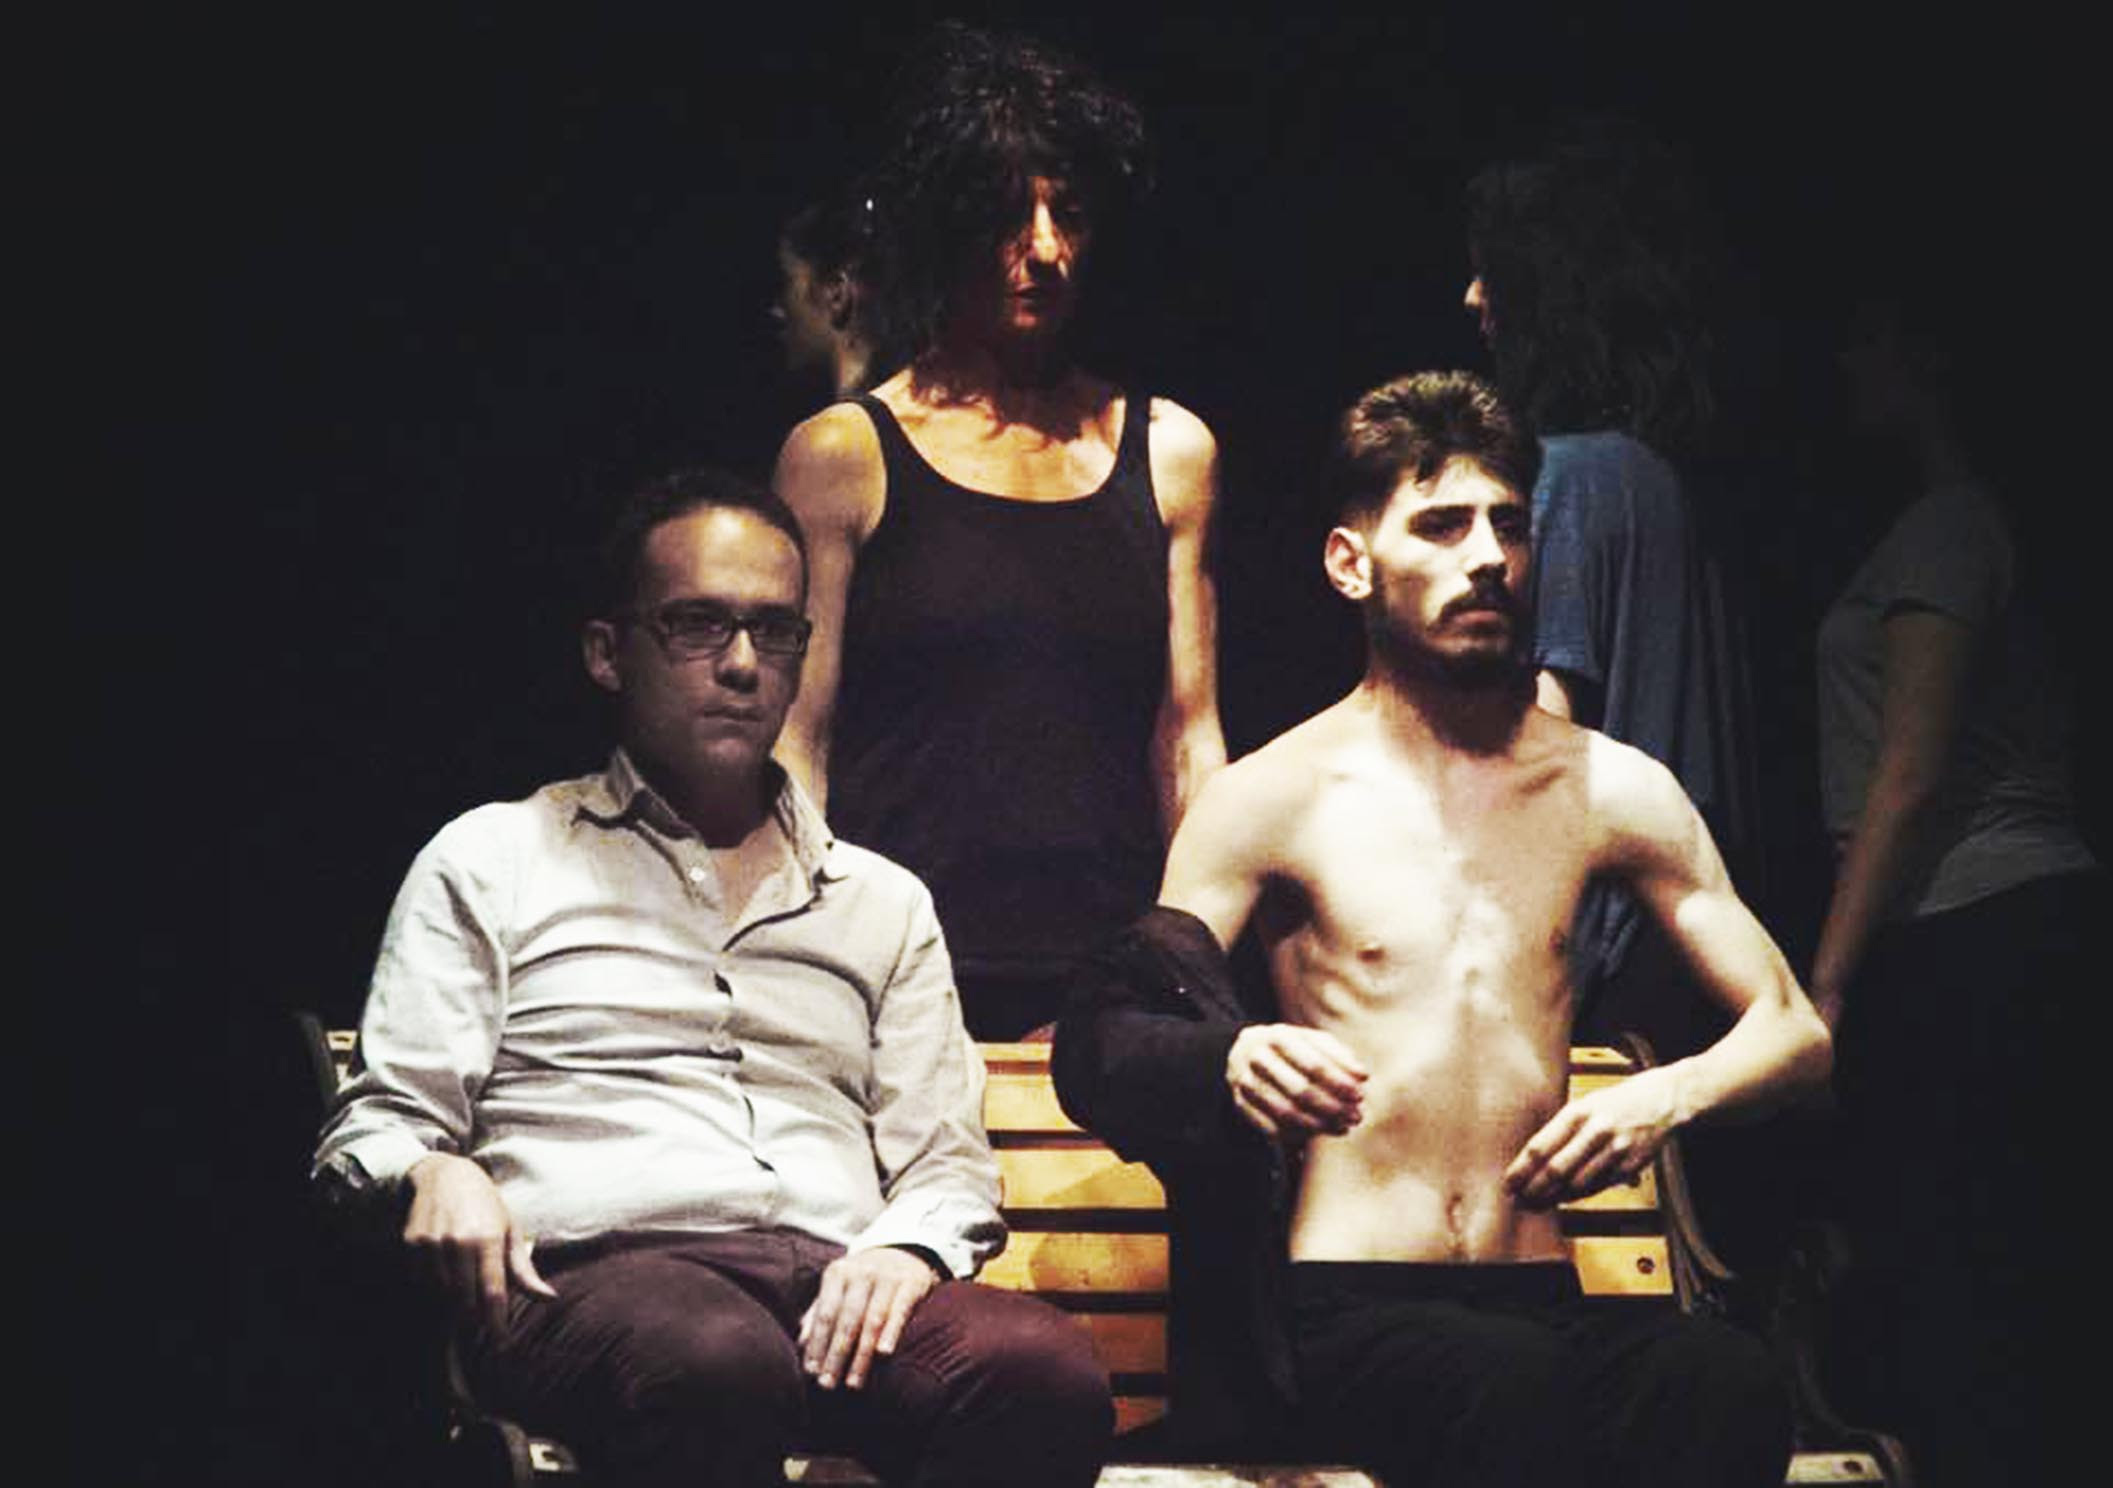  Nessuno, Atelier porta al Teatro Nuovo di Salerno la Company Contemporaneo “Alfano I”